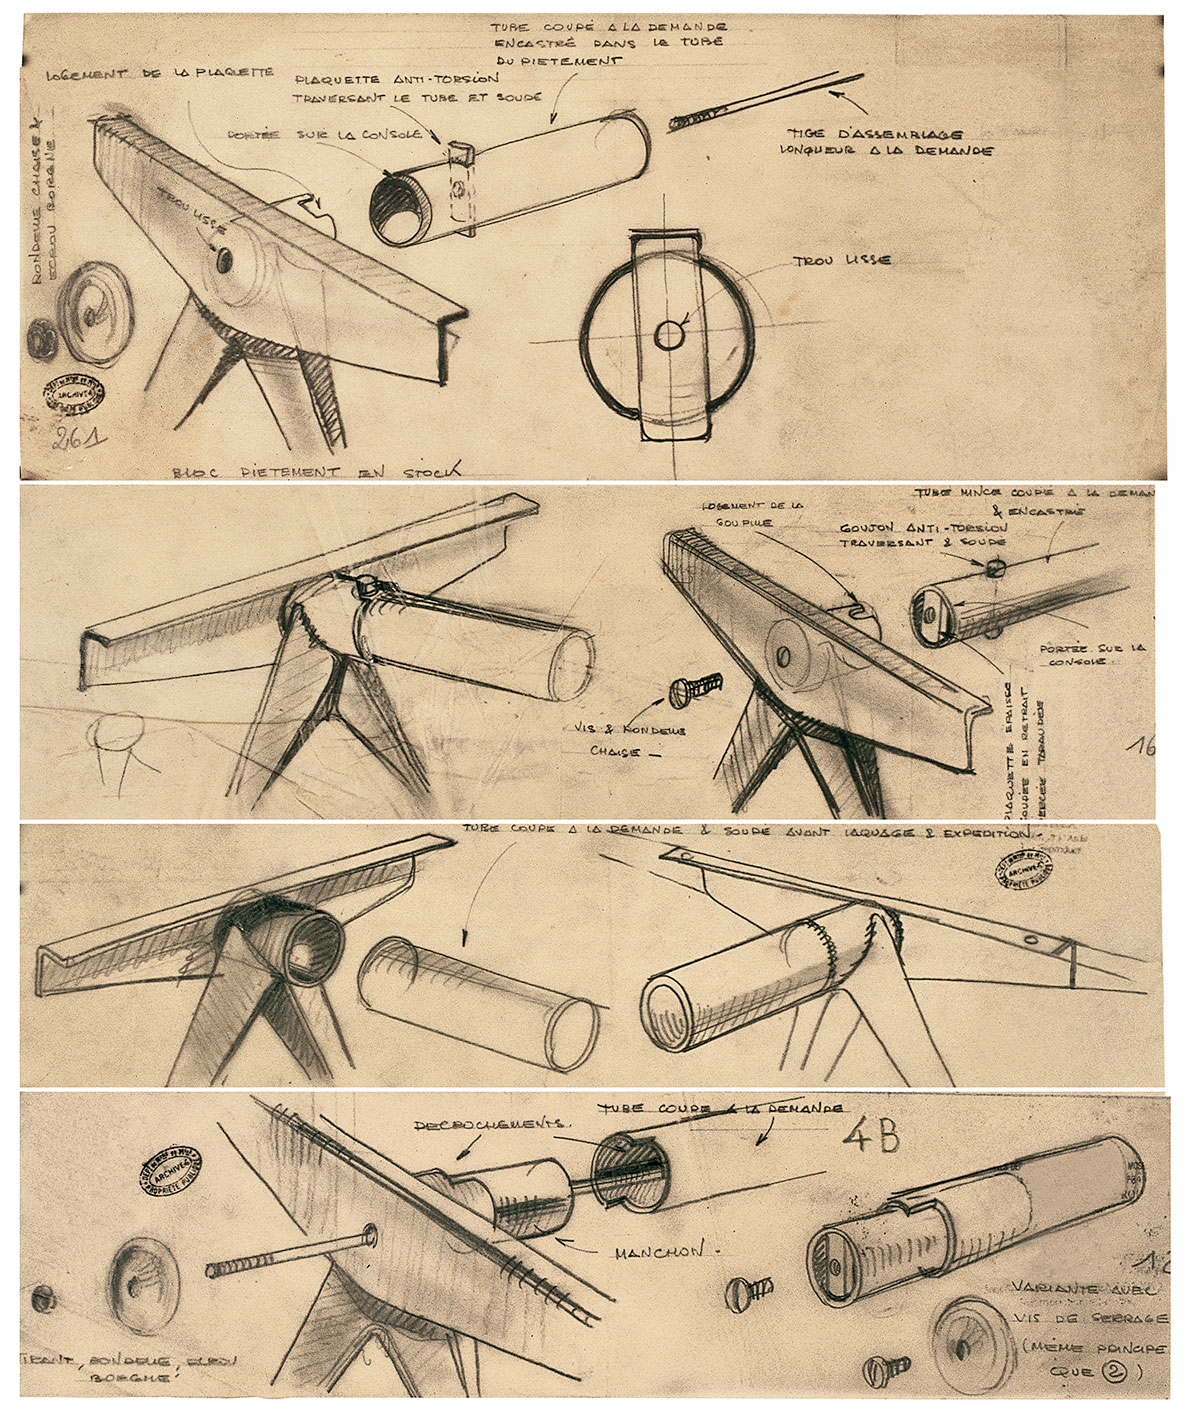 Ateliers Jean Prouvé study of the demountable Compas leg structure, ca. 1953.